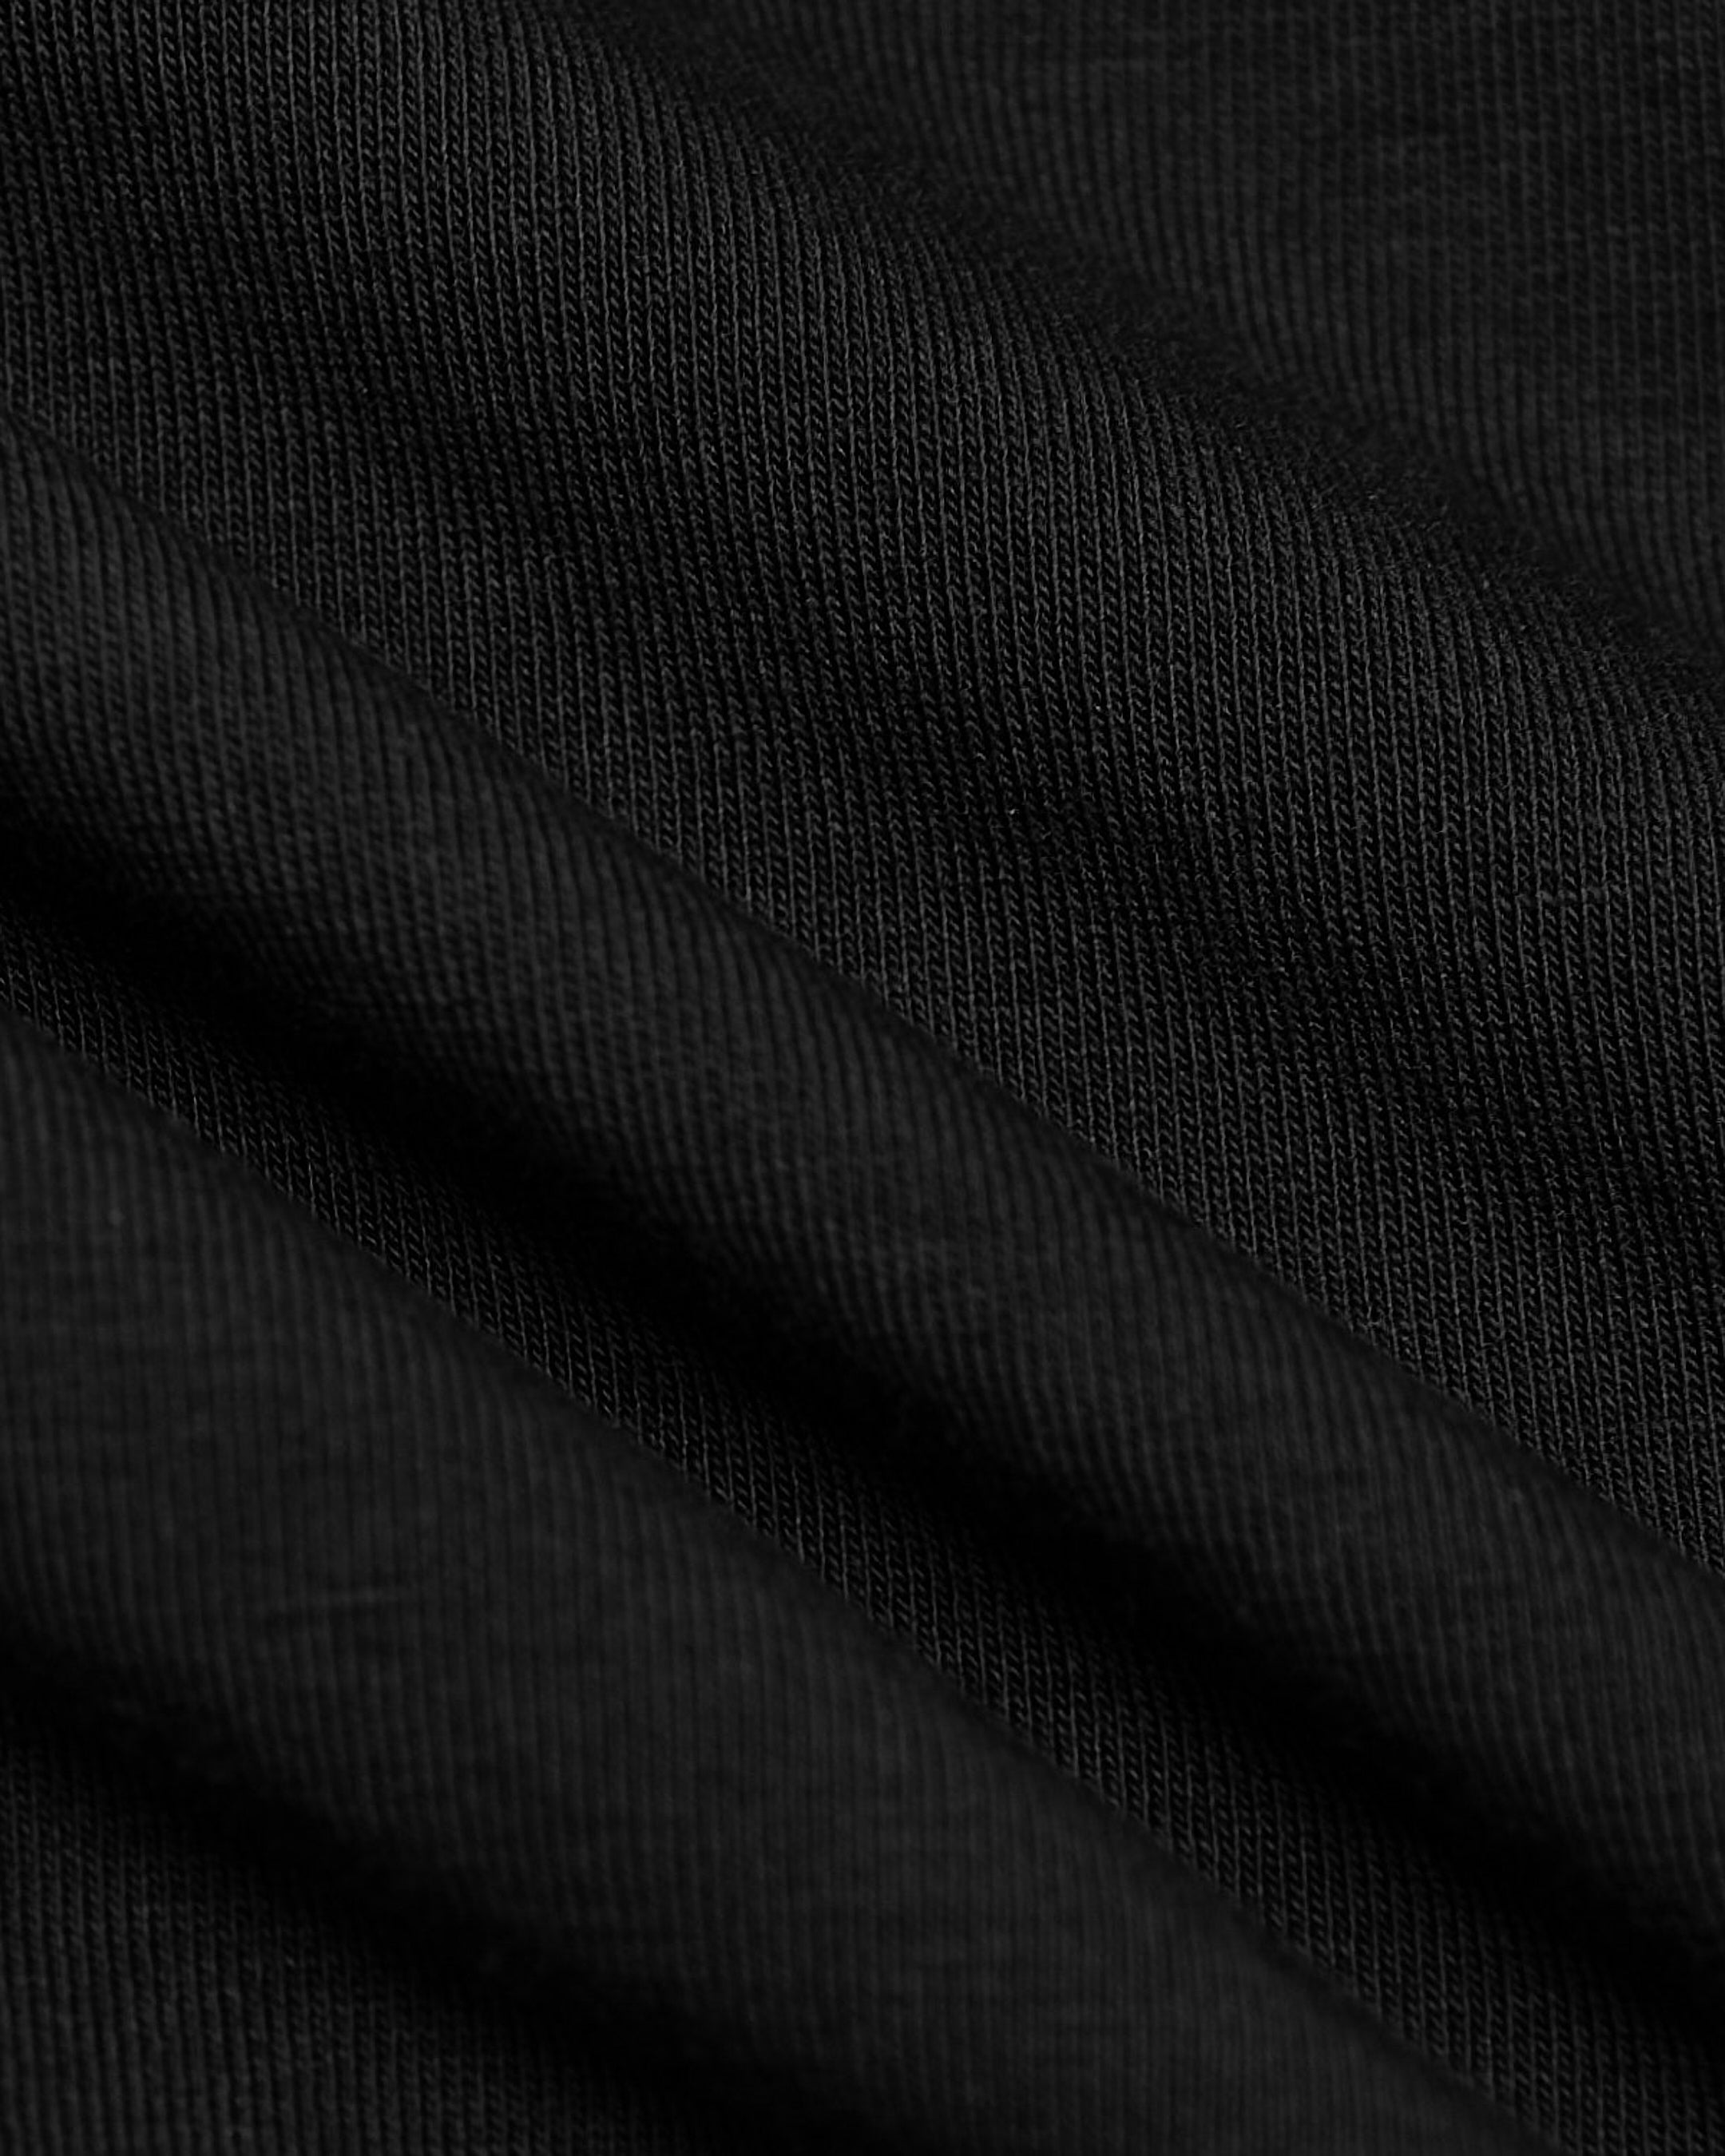 Black Comfort Long Sleeve Button Up Shirt | Black Comfort Long Sleeve ...